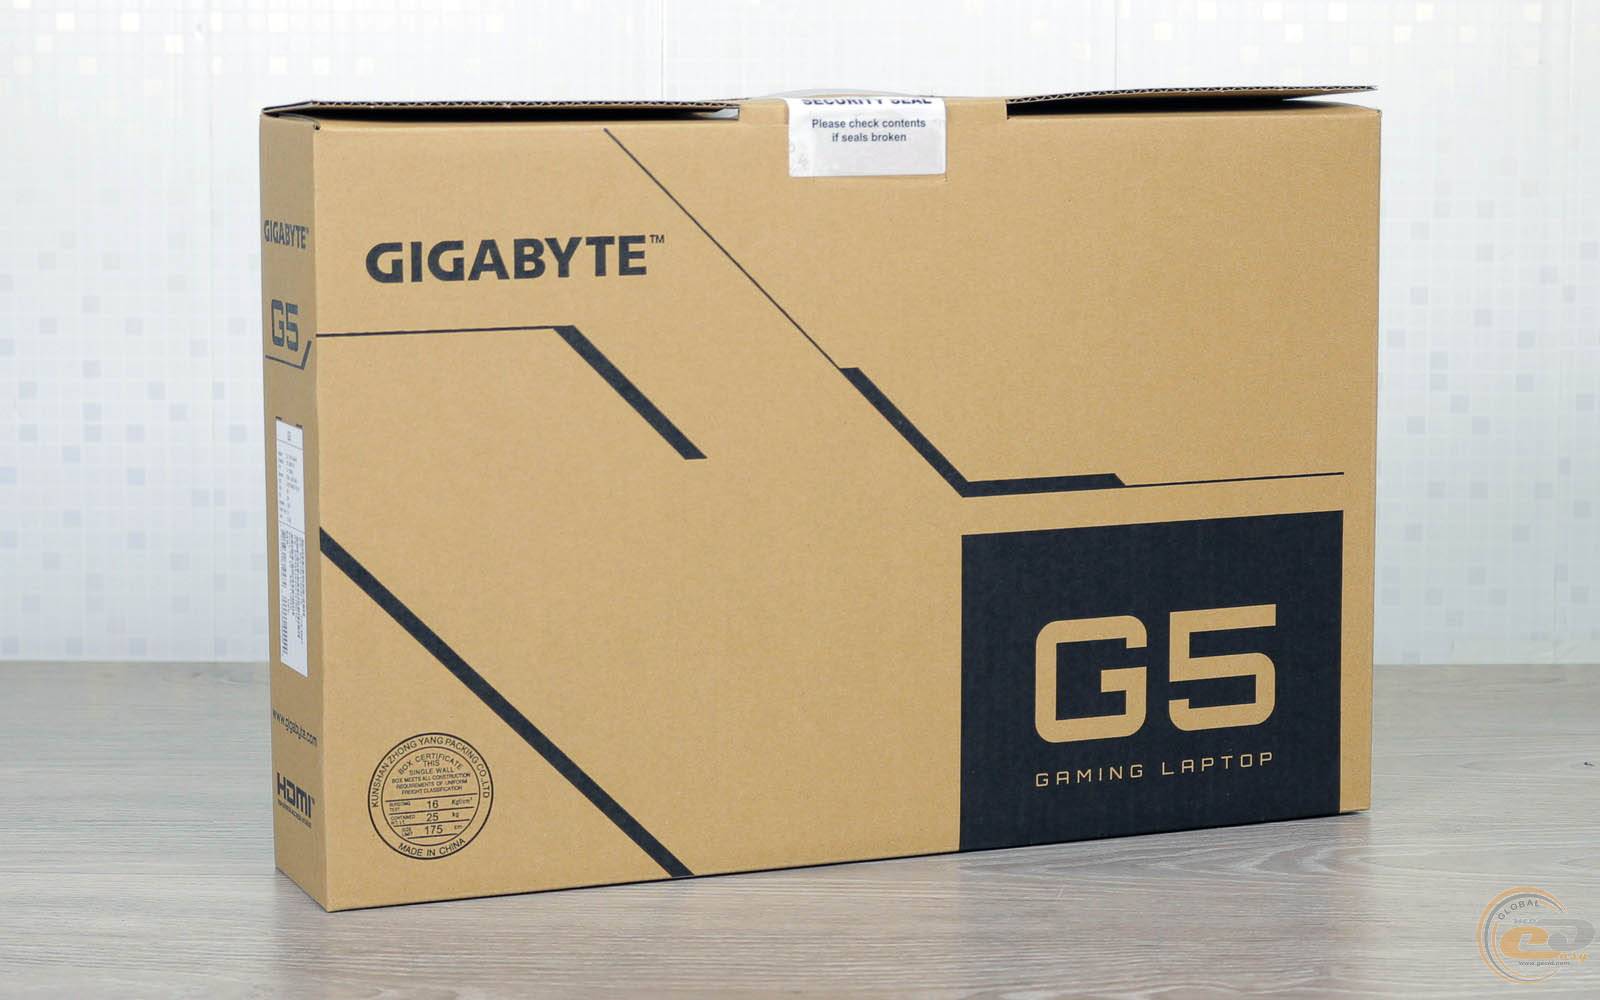 Gigabyte g5 kc. Gigabyte g5 Kc-5de1130sd. Ноутбук Gigabyte g5 KF. G5 Kc-5us1130sh. Gigabyte g5 3060.